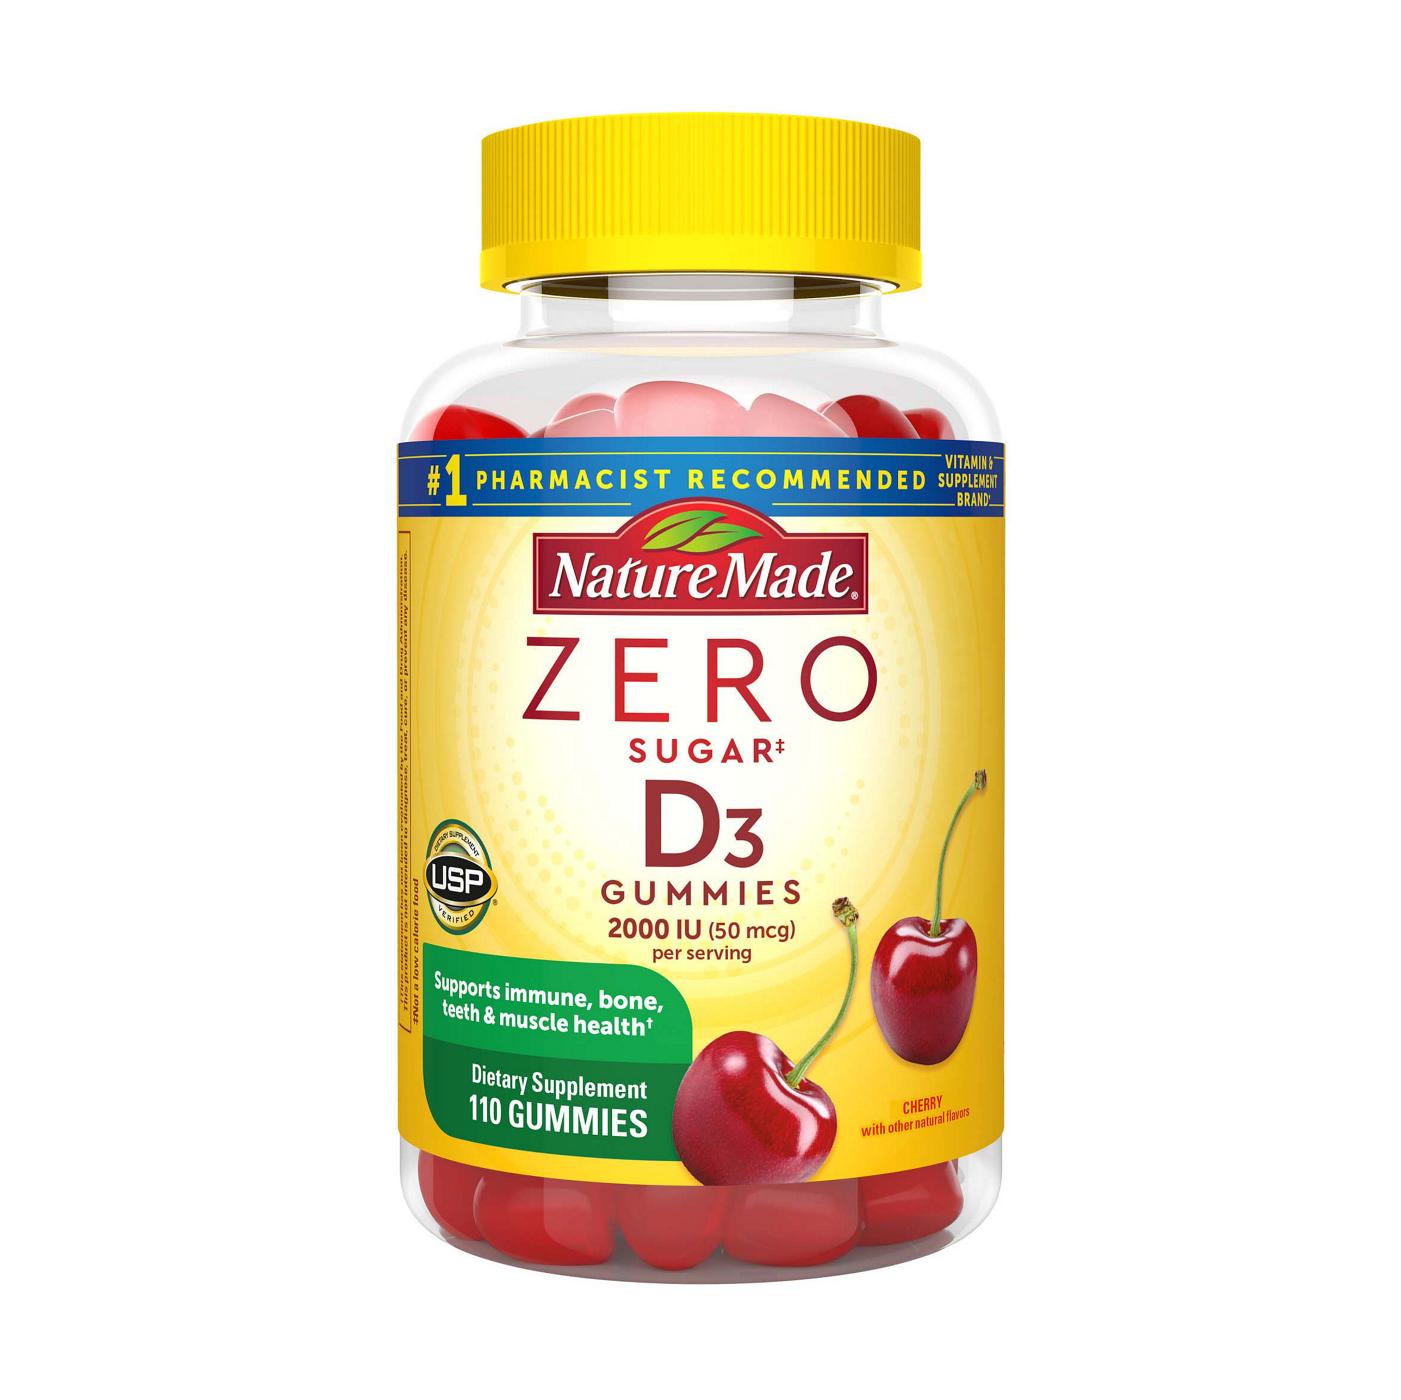 Nature Made Zero Sugar Vitamin D3 Gummies - Cherry; image 1 of 4